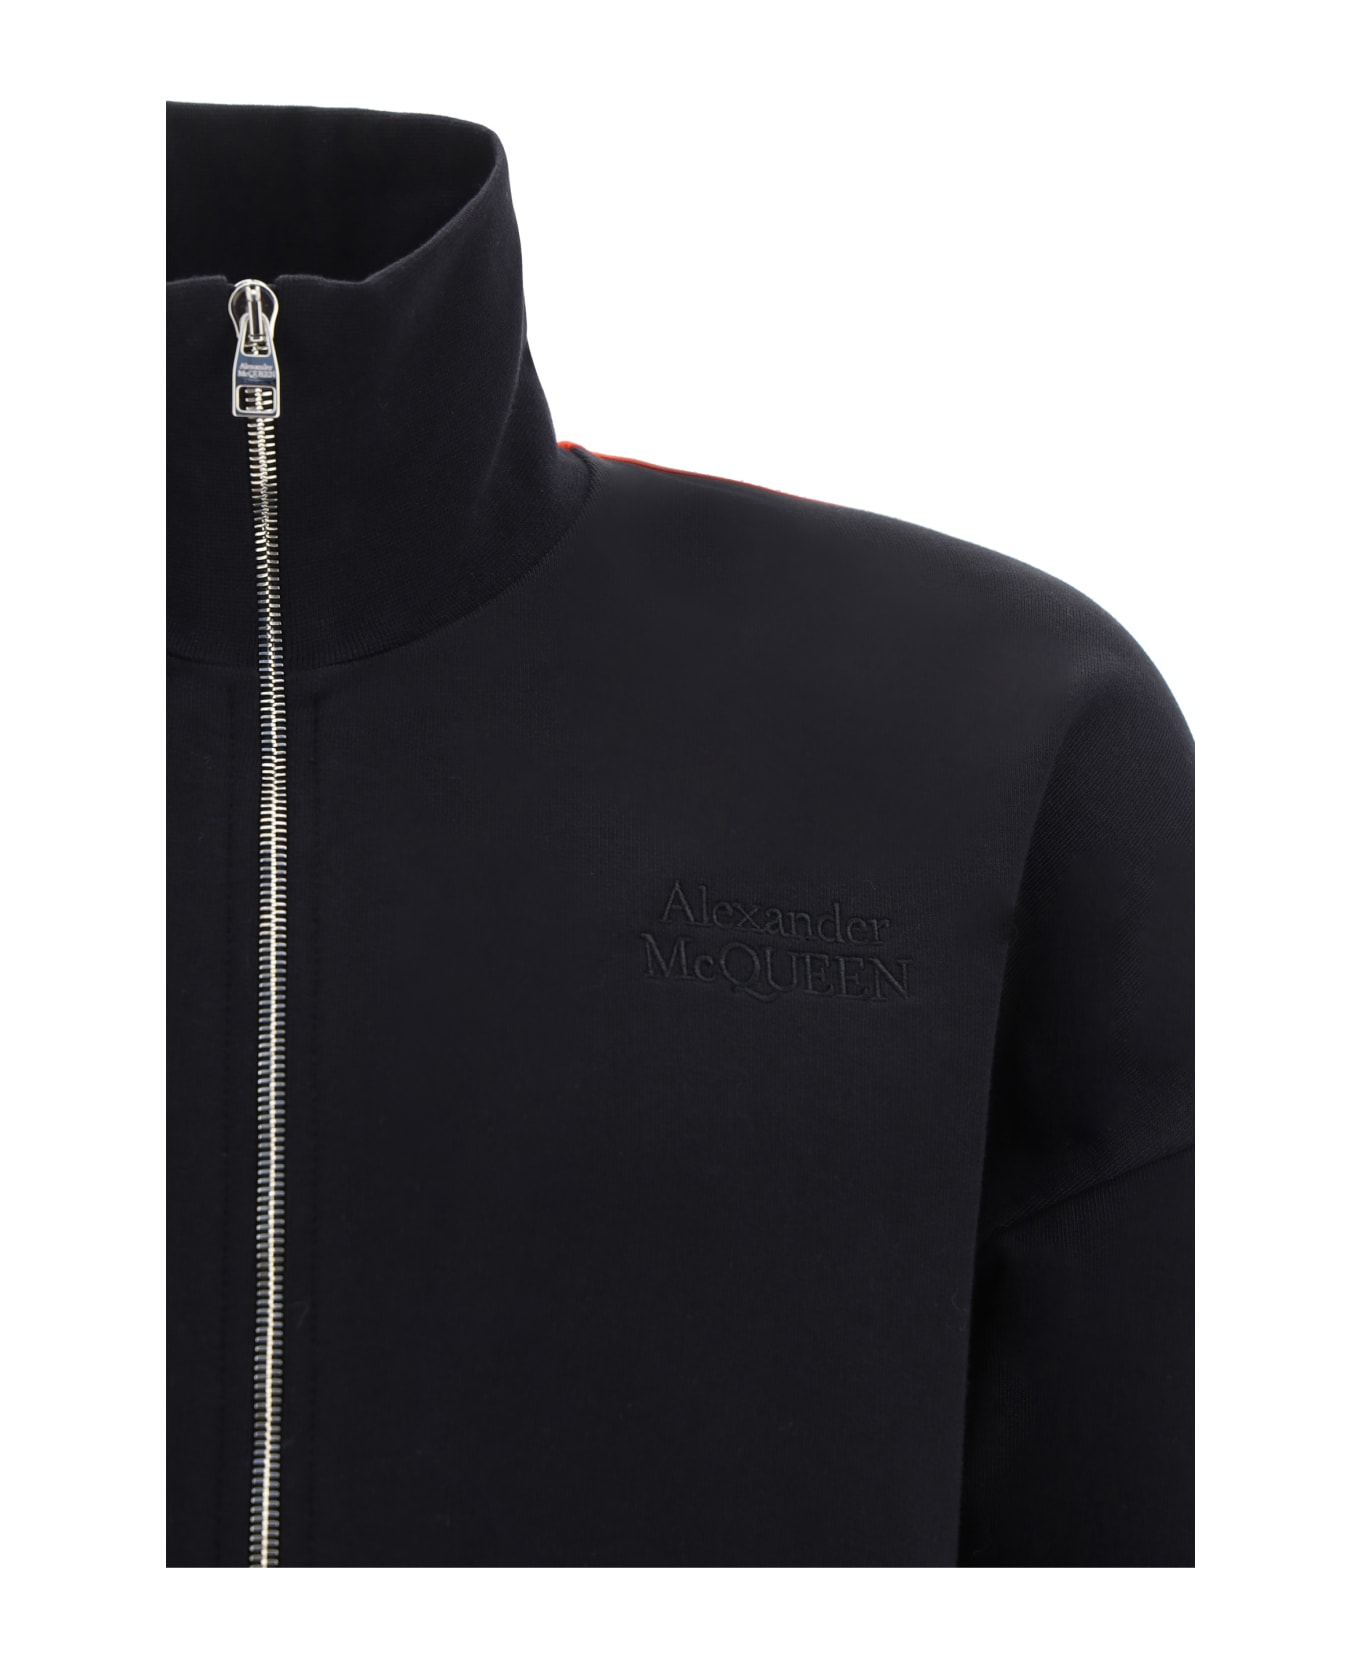 Alexander McQueen Sweatshirt - Black フリース